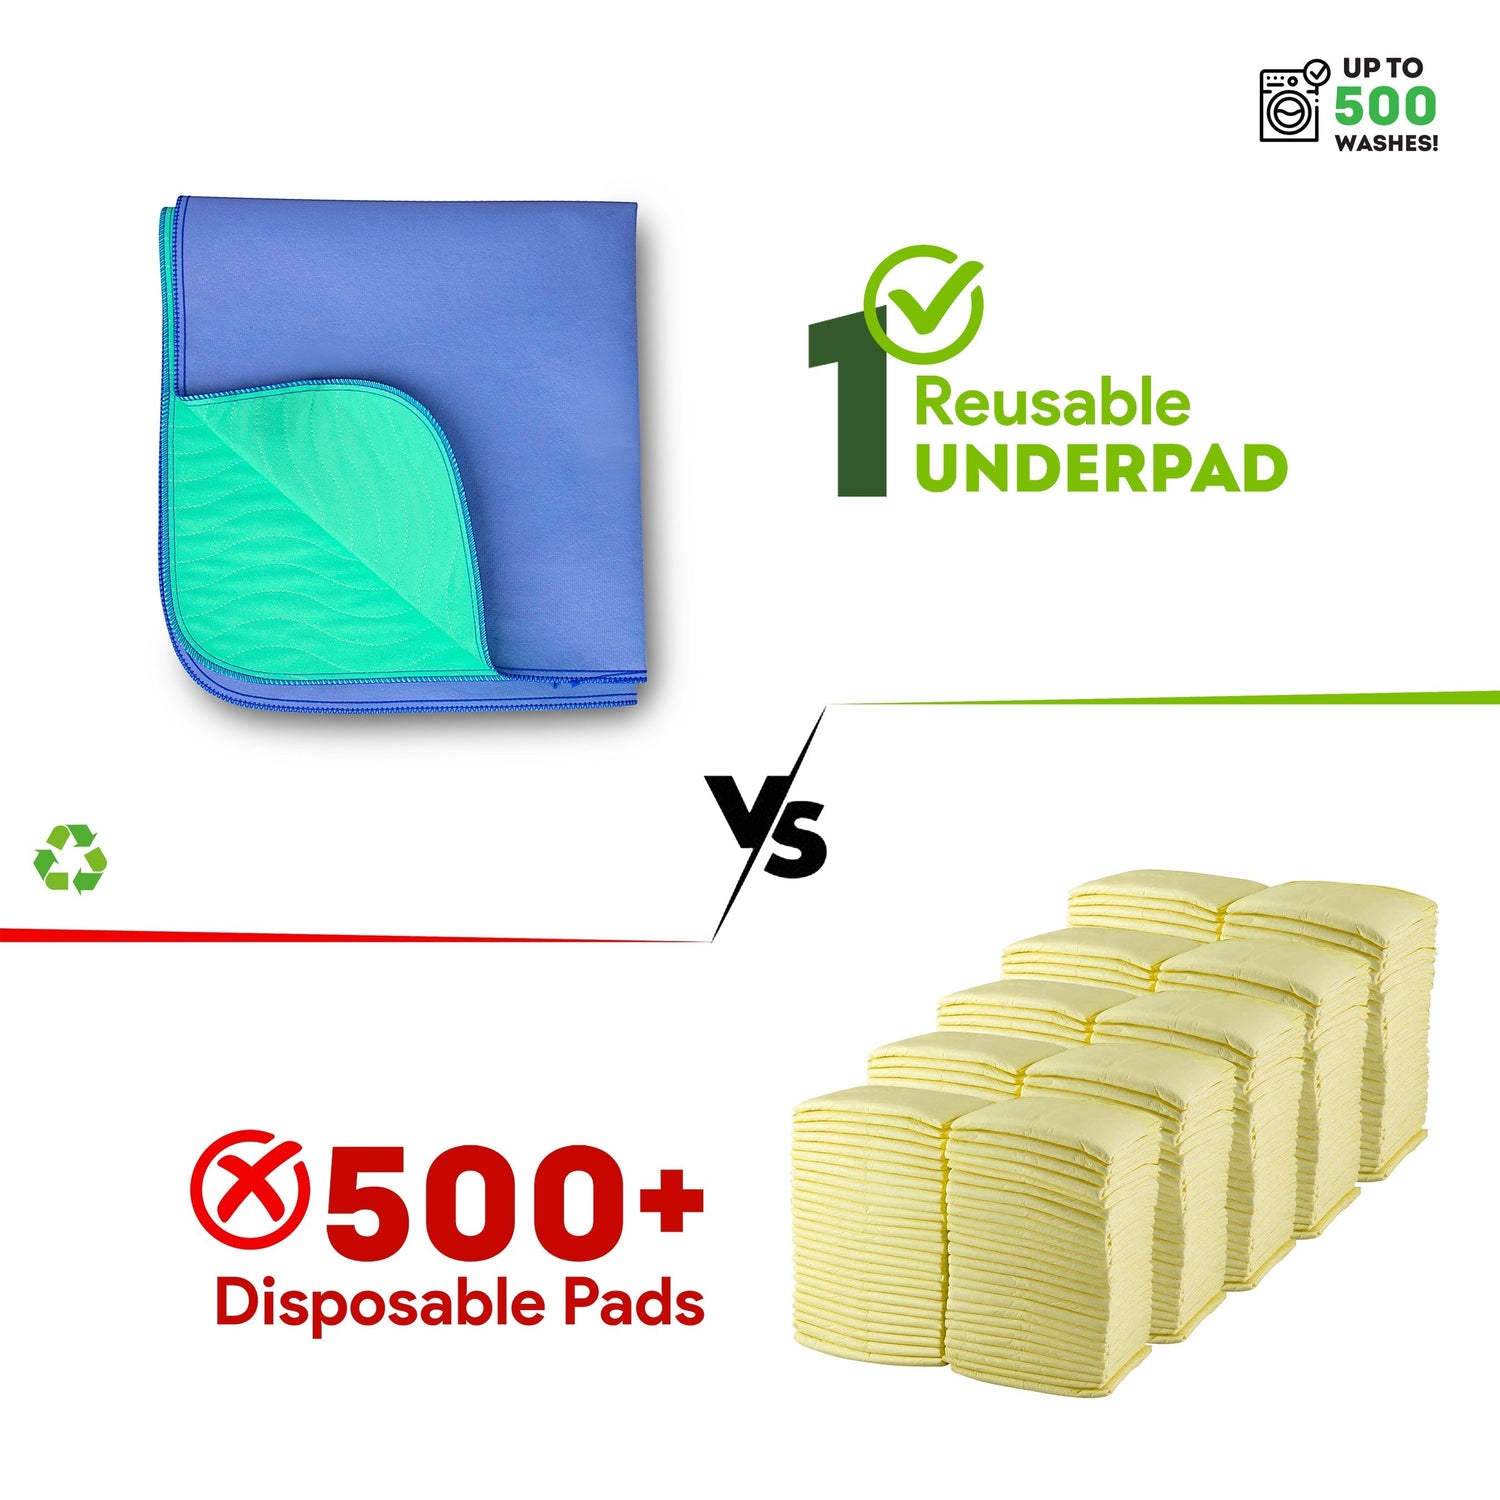 Reusable Underpads